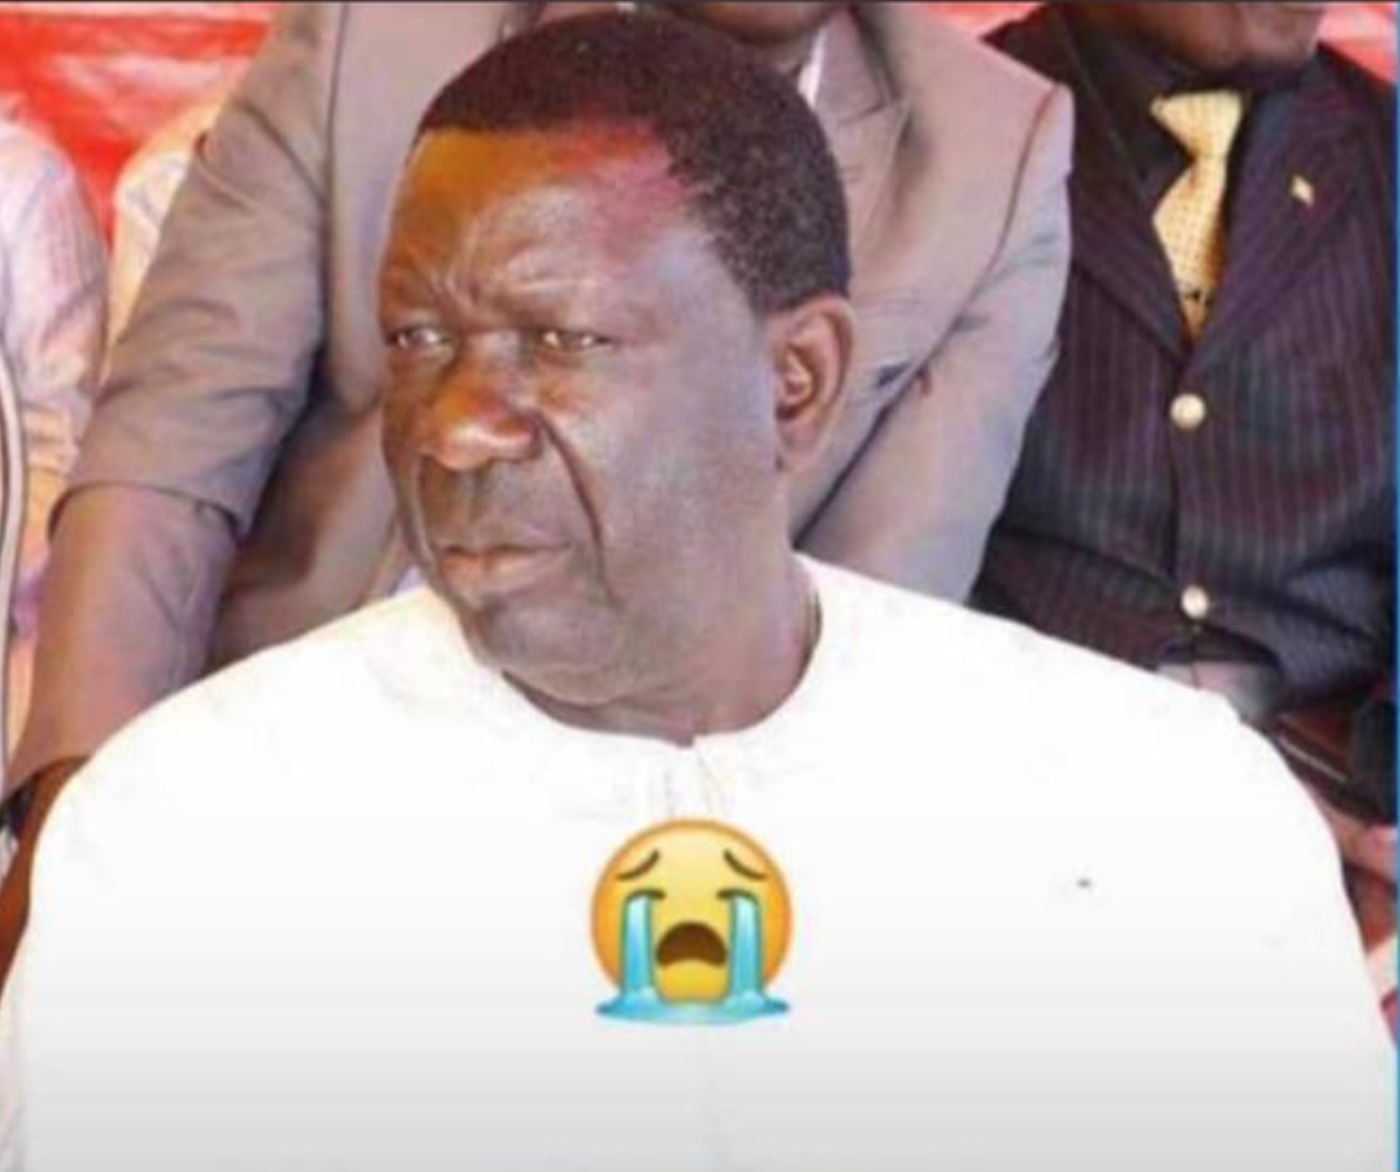 Décès du père de M. Mbaye Laye, le Cablodistributeur de Safinatoul Amane : Leral présente ses condoléances et annonce l'enterrement aujourd'hui